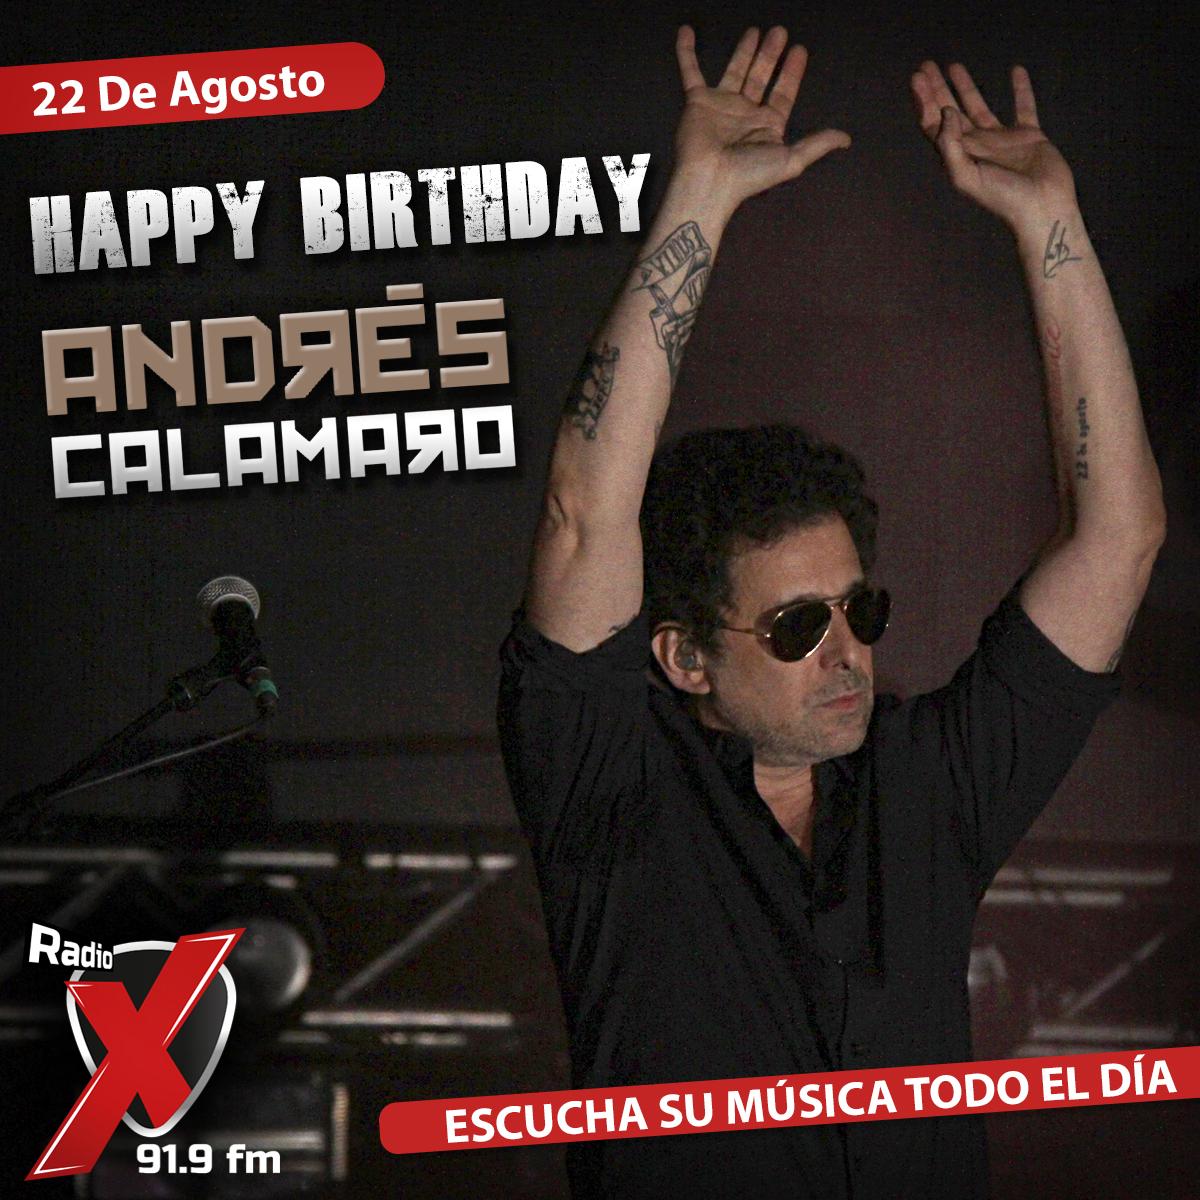 Happy Birthday Andrés Calamaro \m/  Escucha su música TODO EL DÍA EN RADIO X --  